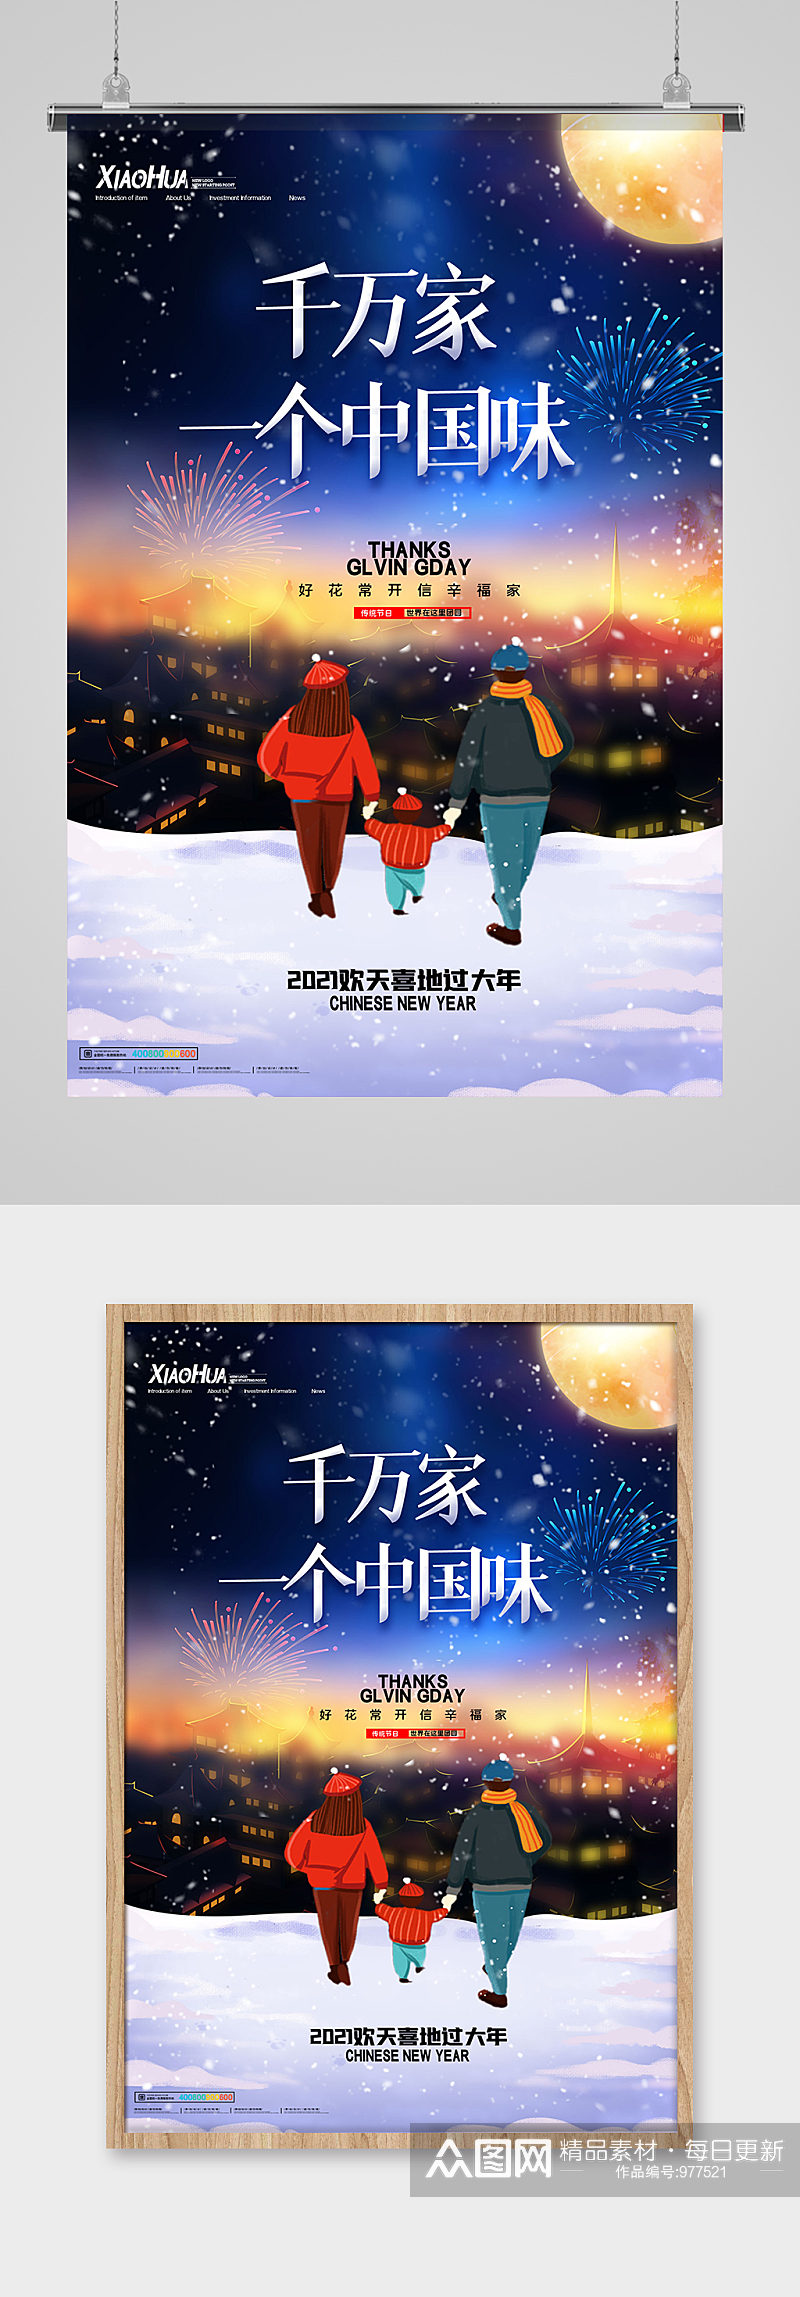 简约卡通新年千万家一个中国味道海报设计素材